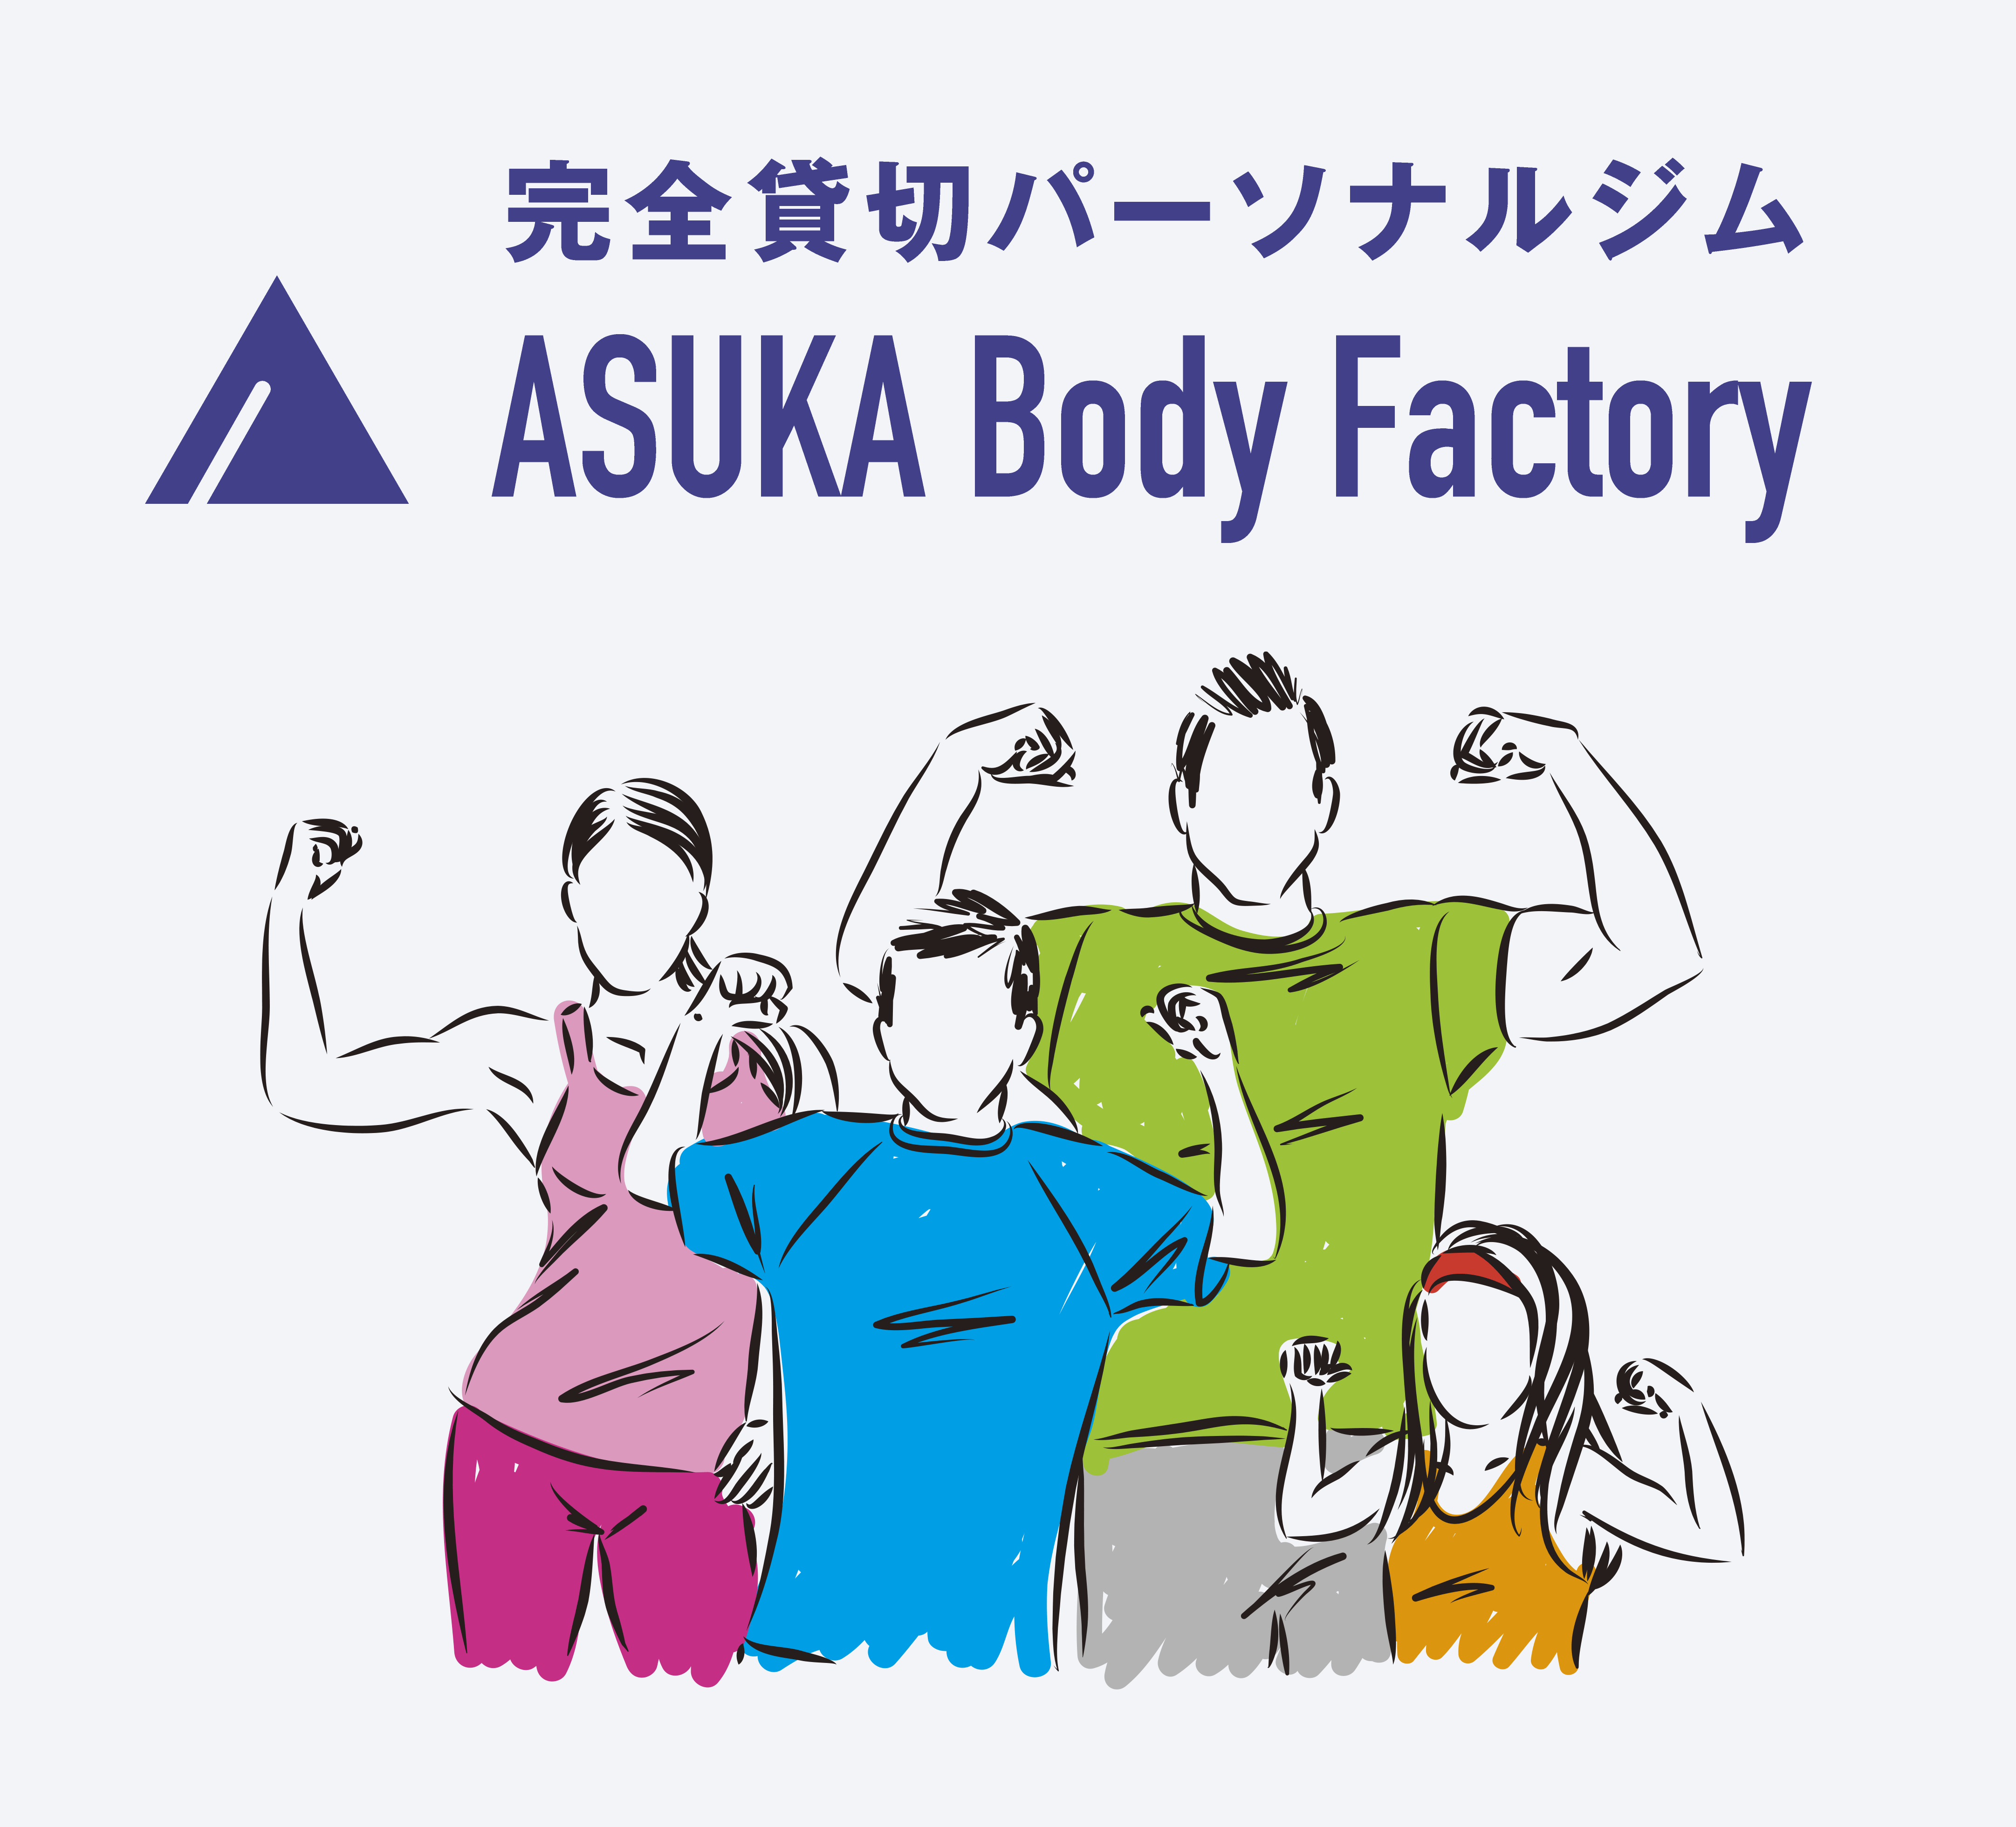 完全貸切パーソナルジム ASUKA Body Facrory